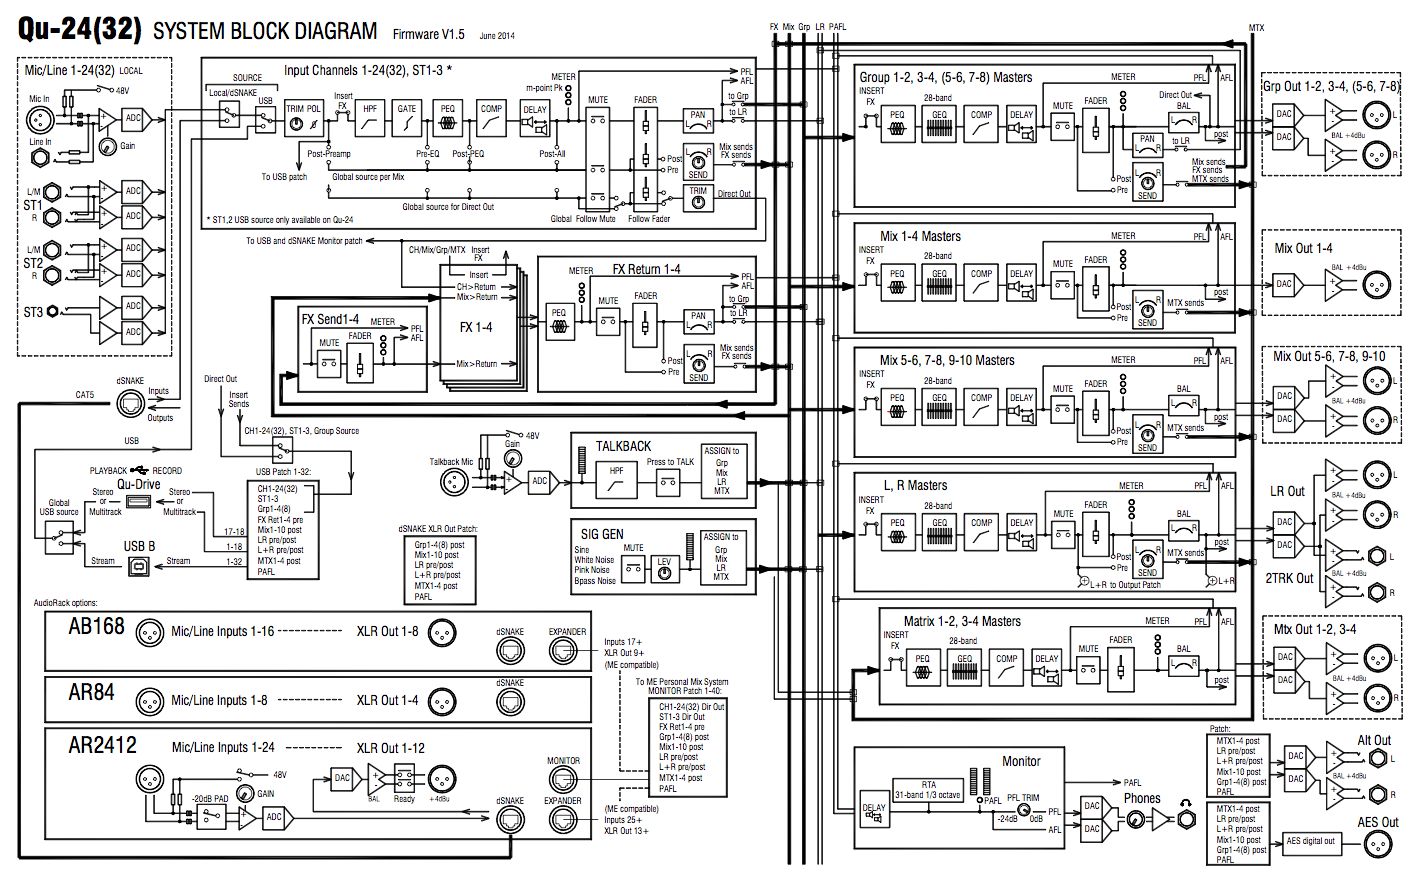 Qu-24 System Block Diagram.